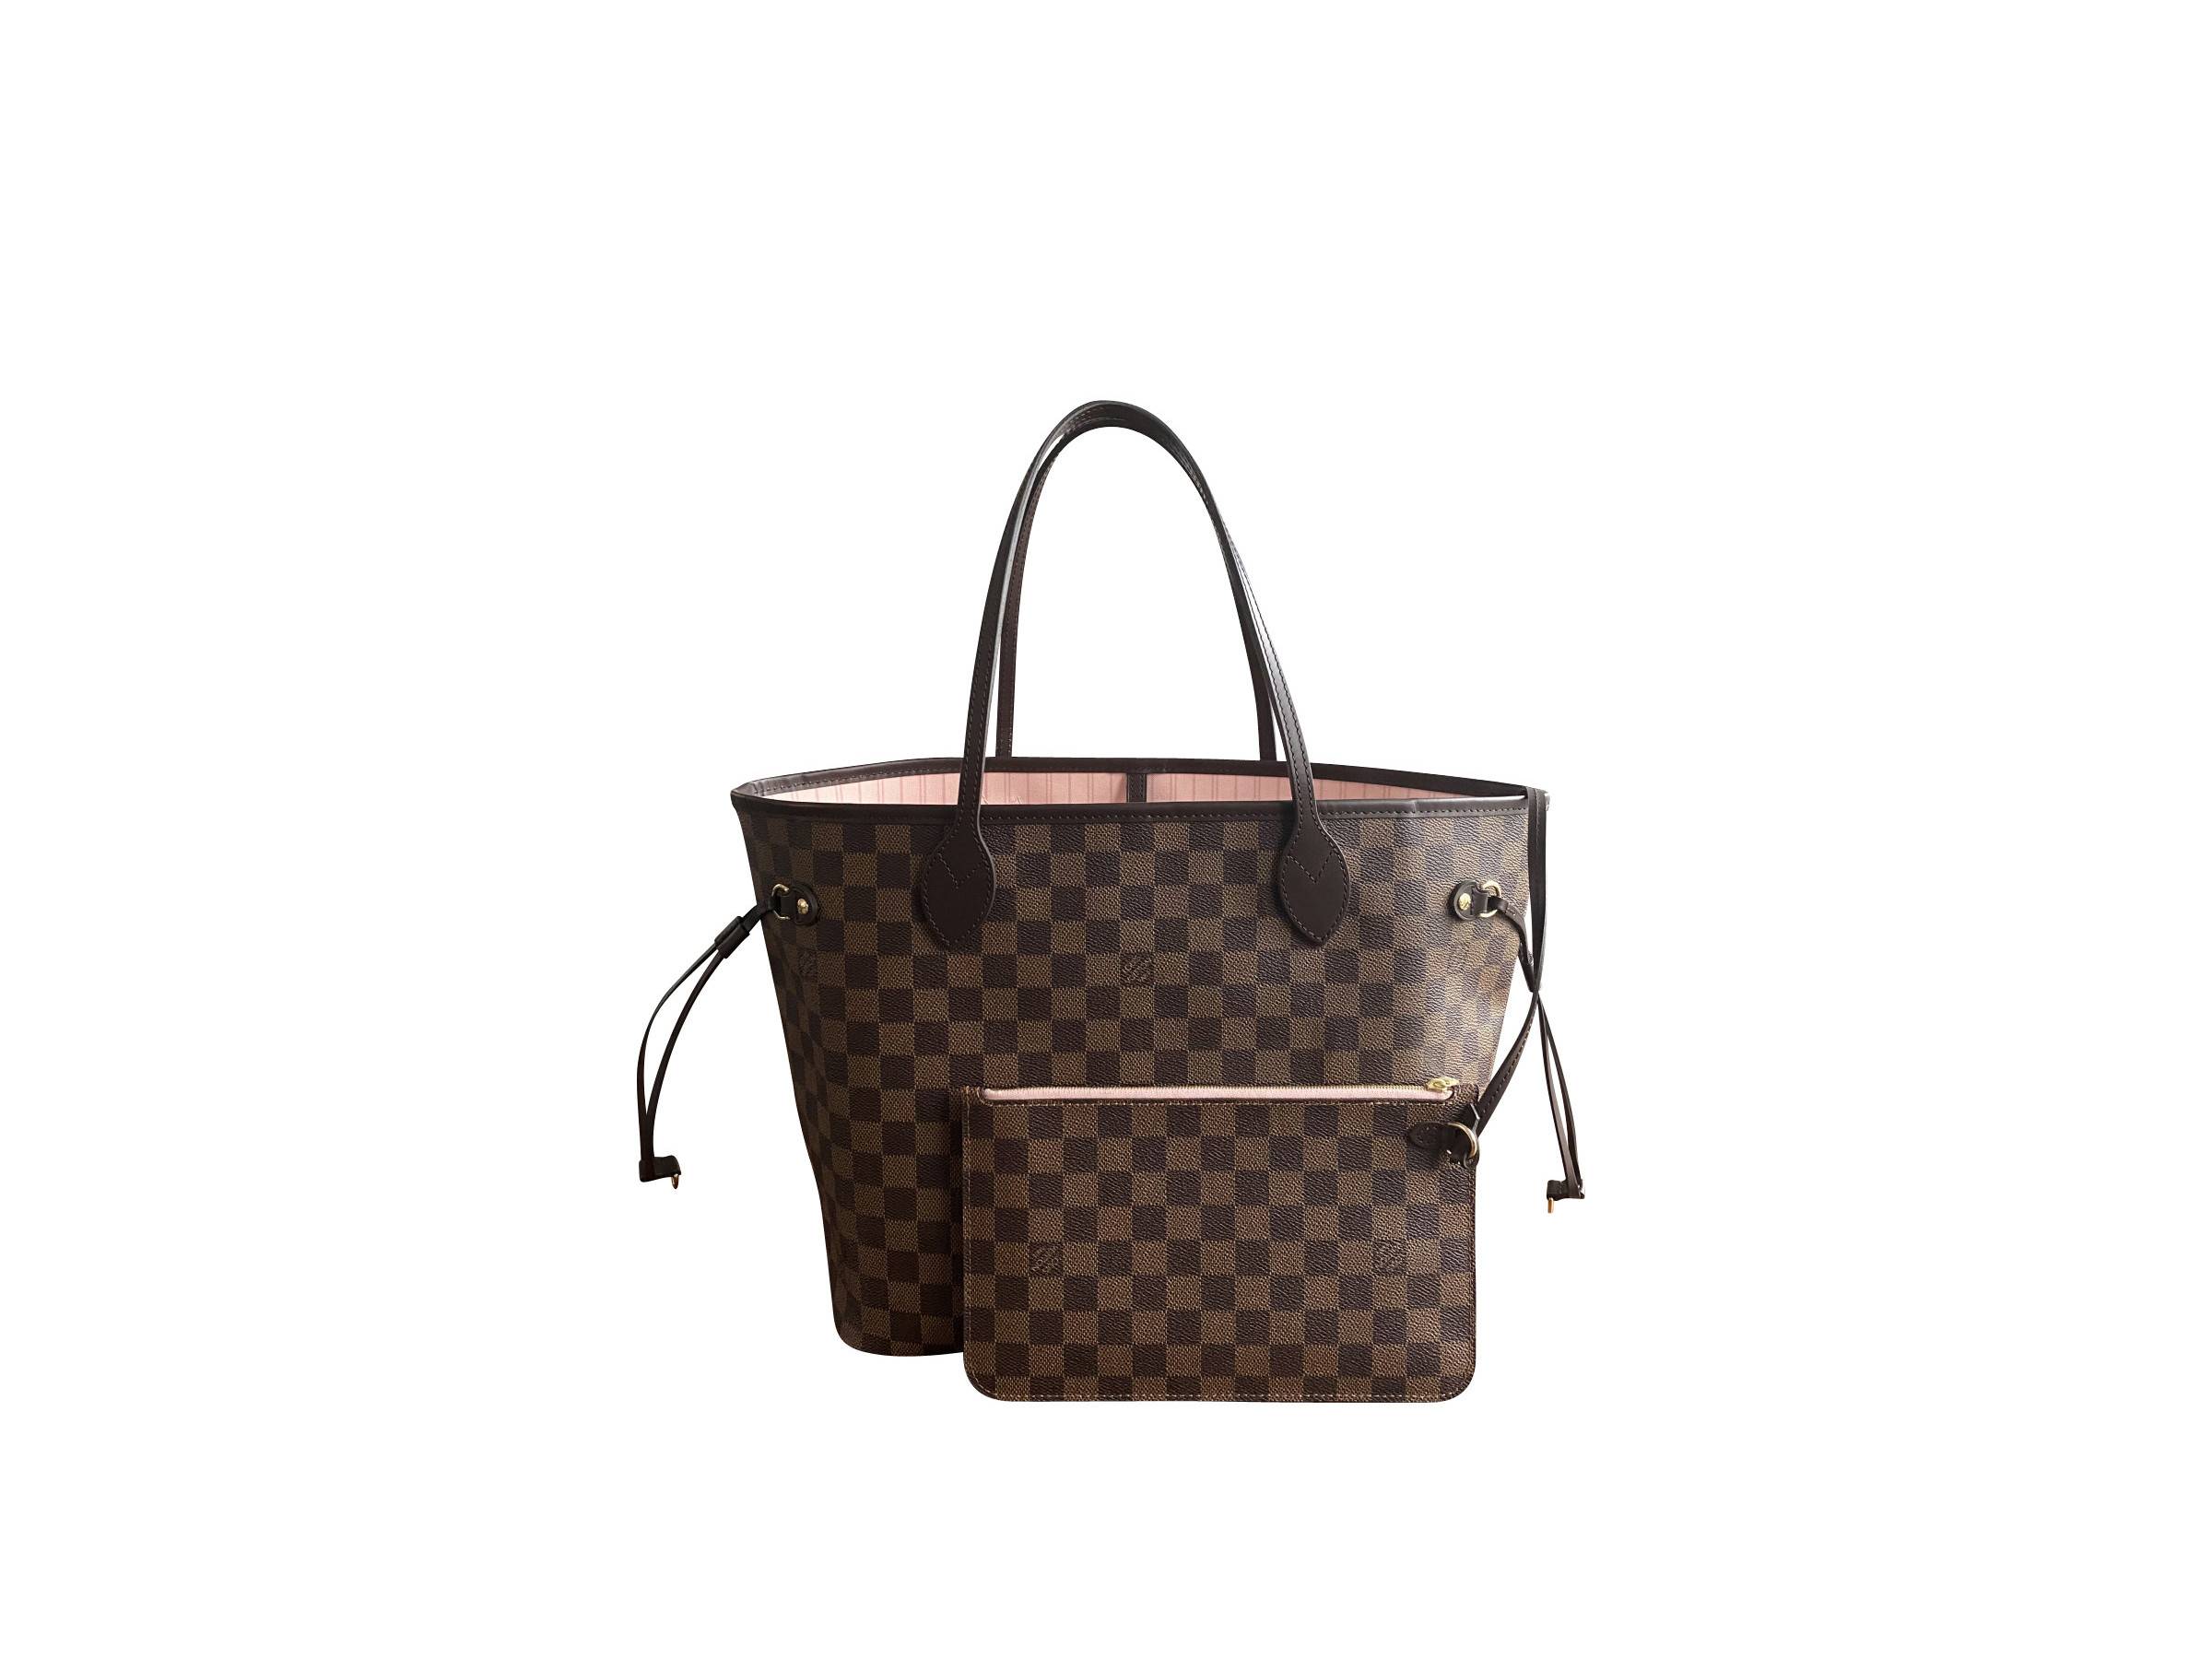 VERKAUFT - Louis Vuitton Tasche N41603 Neverfull MM Damier Rose Ballerine +  abnehmbare kleine Tasche * TOP Beleg von Sept. 2021